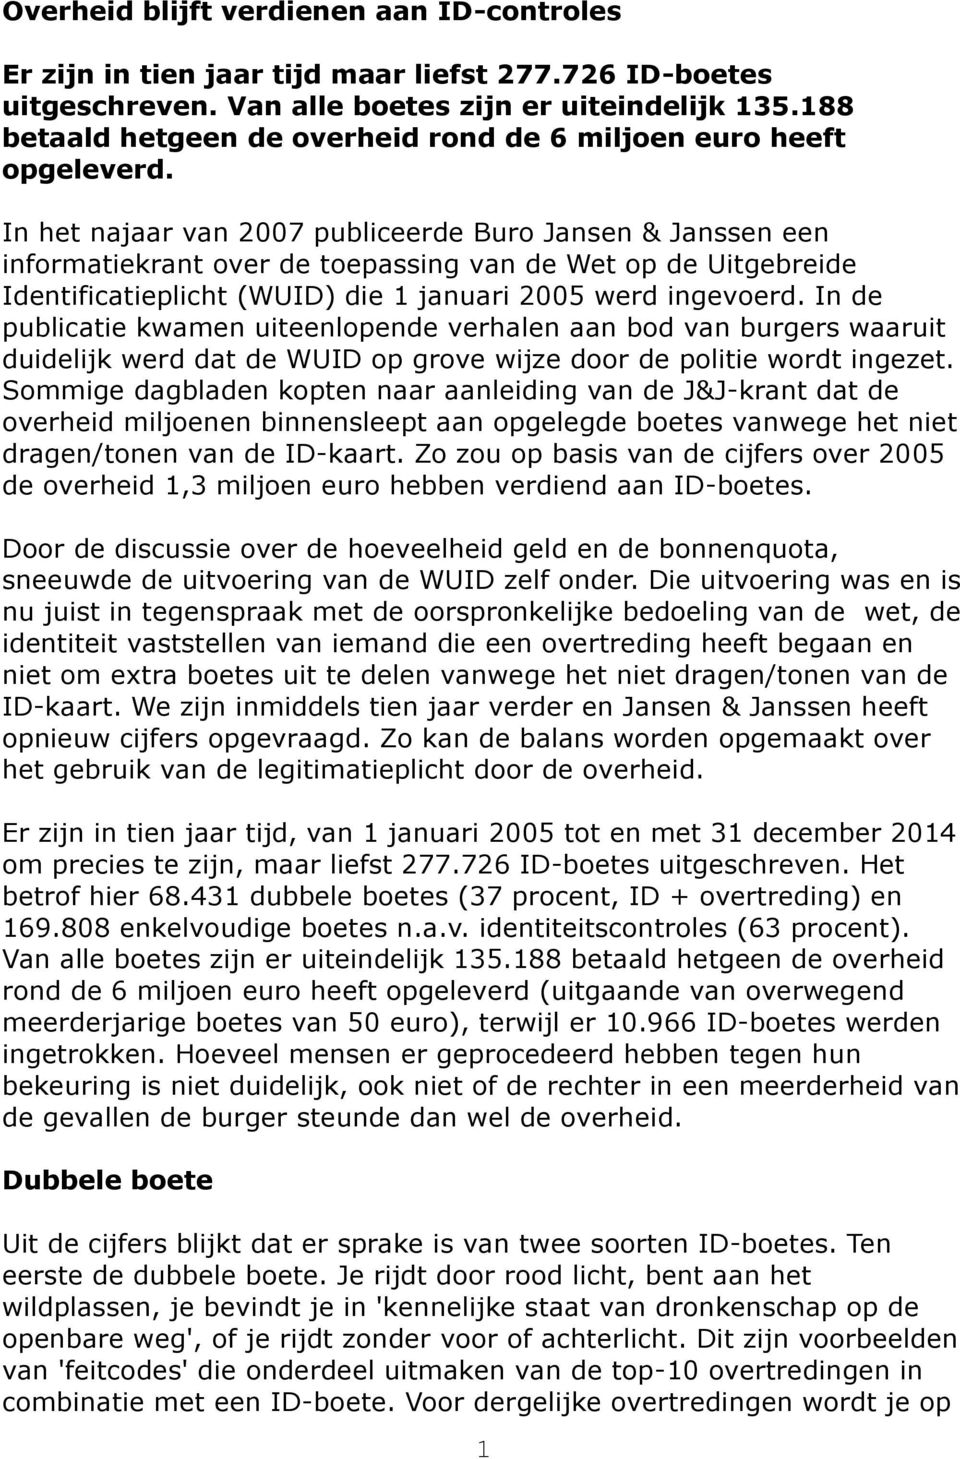 In het najaar van 2007 publiceerde Buro Jansen & Janssen een informatiekrant over de toepassing van de Wet op de Uitgebreide Identificatieplicht (WUID) die 1 januari 2005 werd ingevoerd.